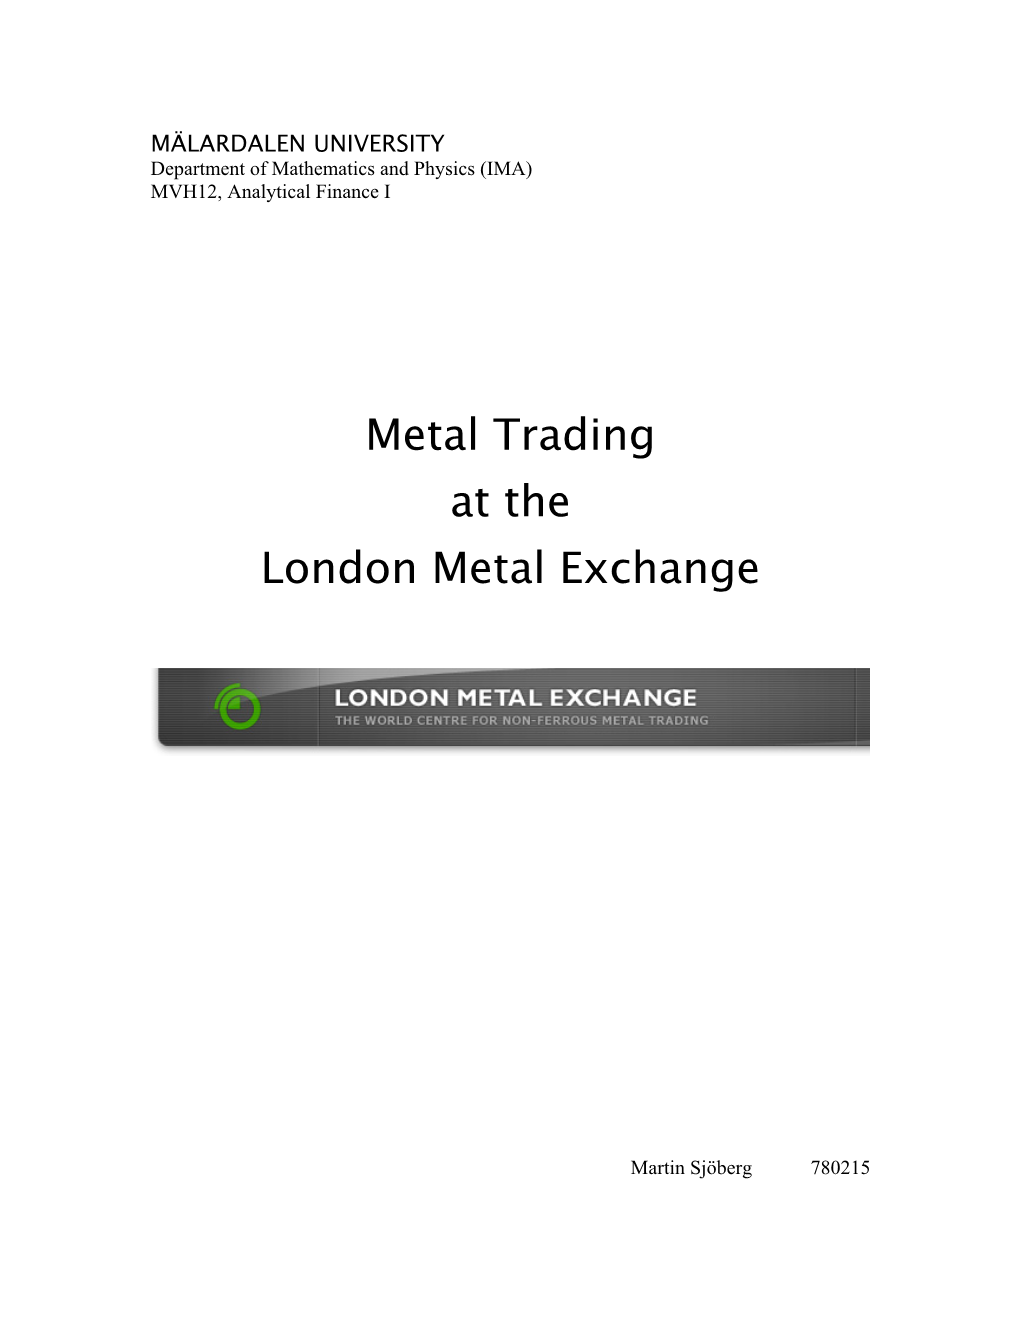 Metal Trading at the London Metal Exchange